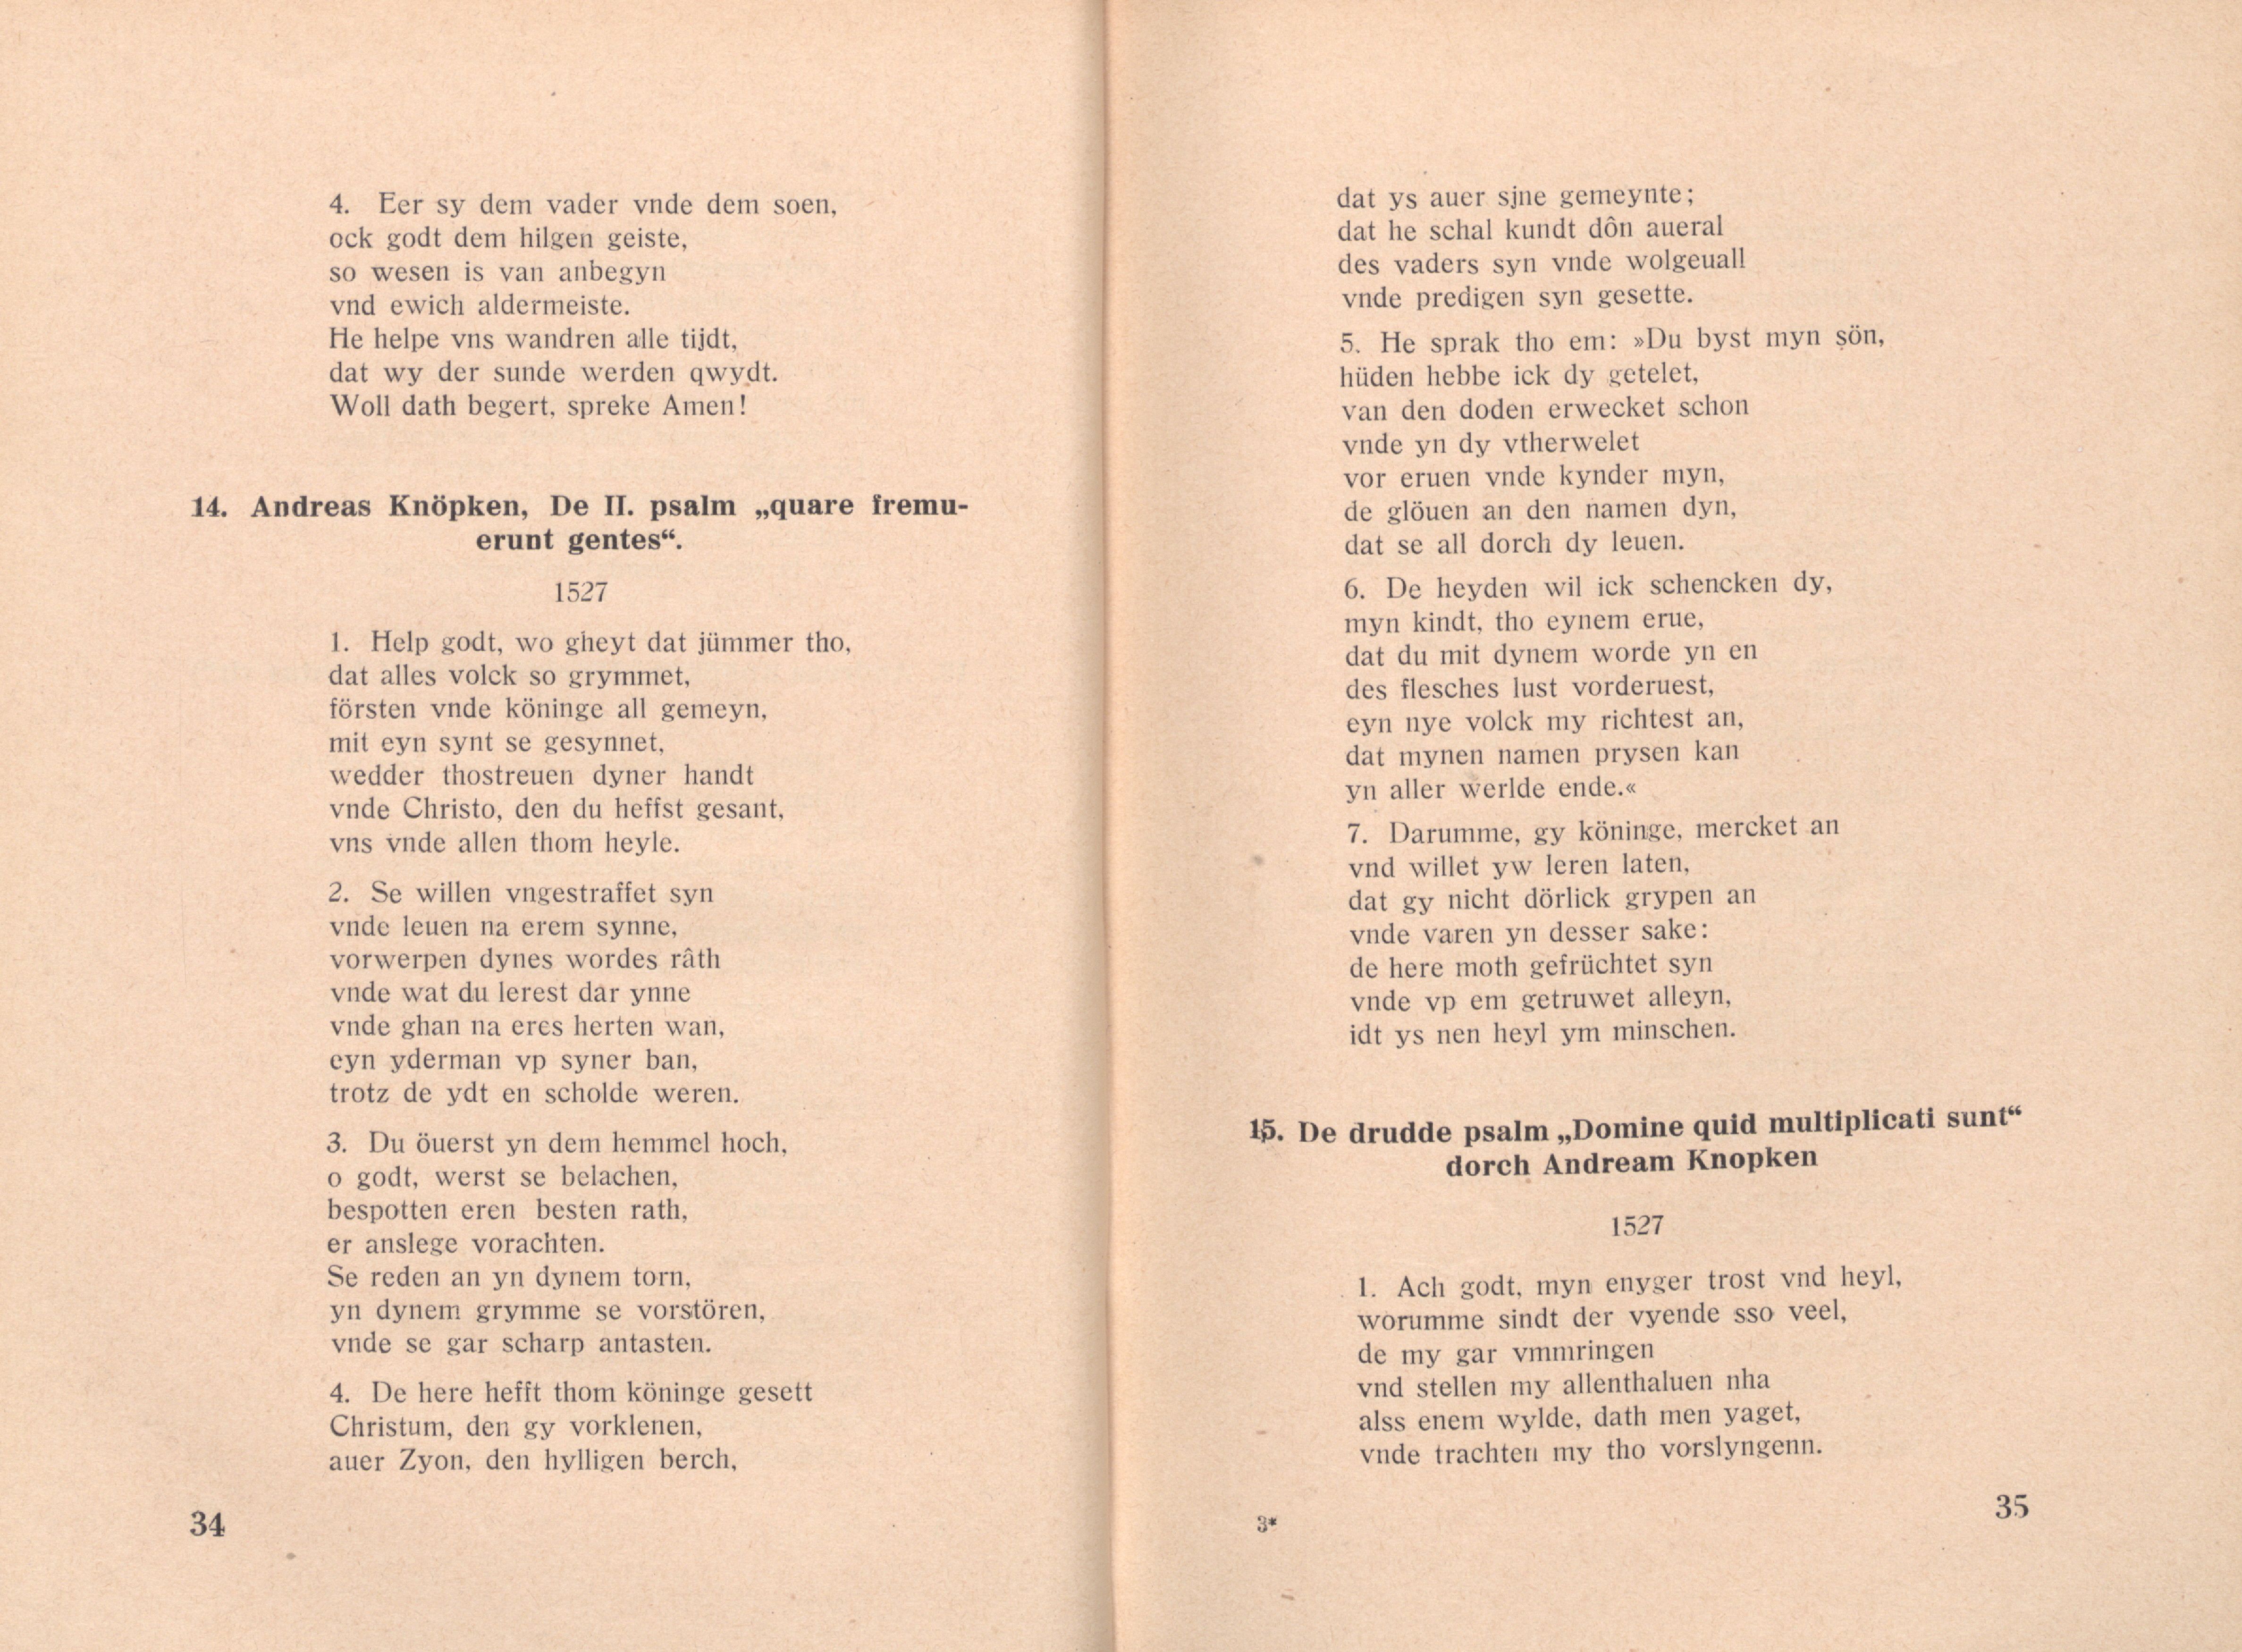 De erste psalm ("beatus vir") (1526) | 2. (34-35) Main body of text